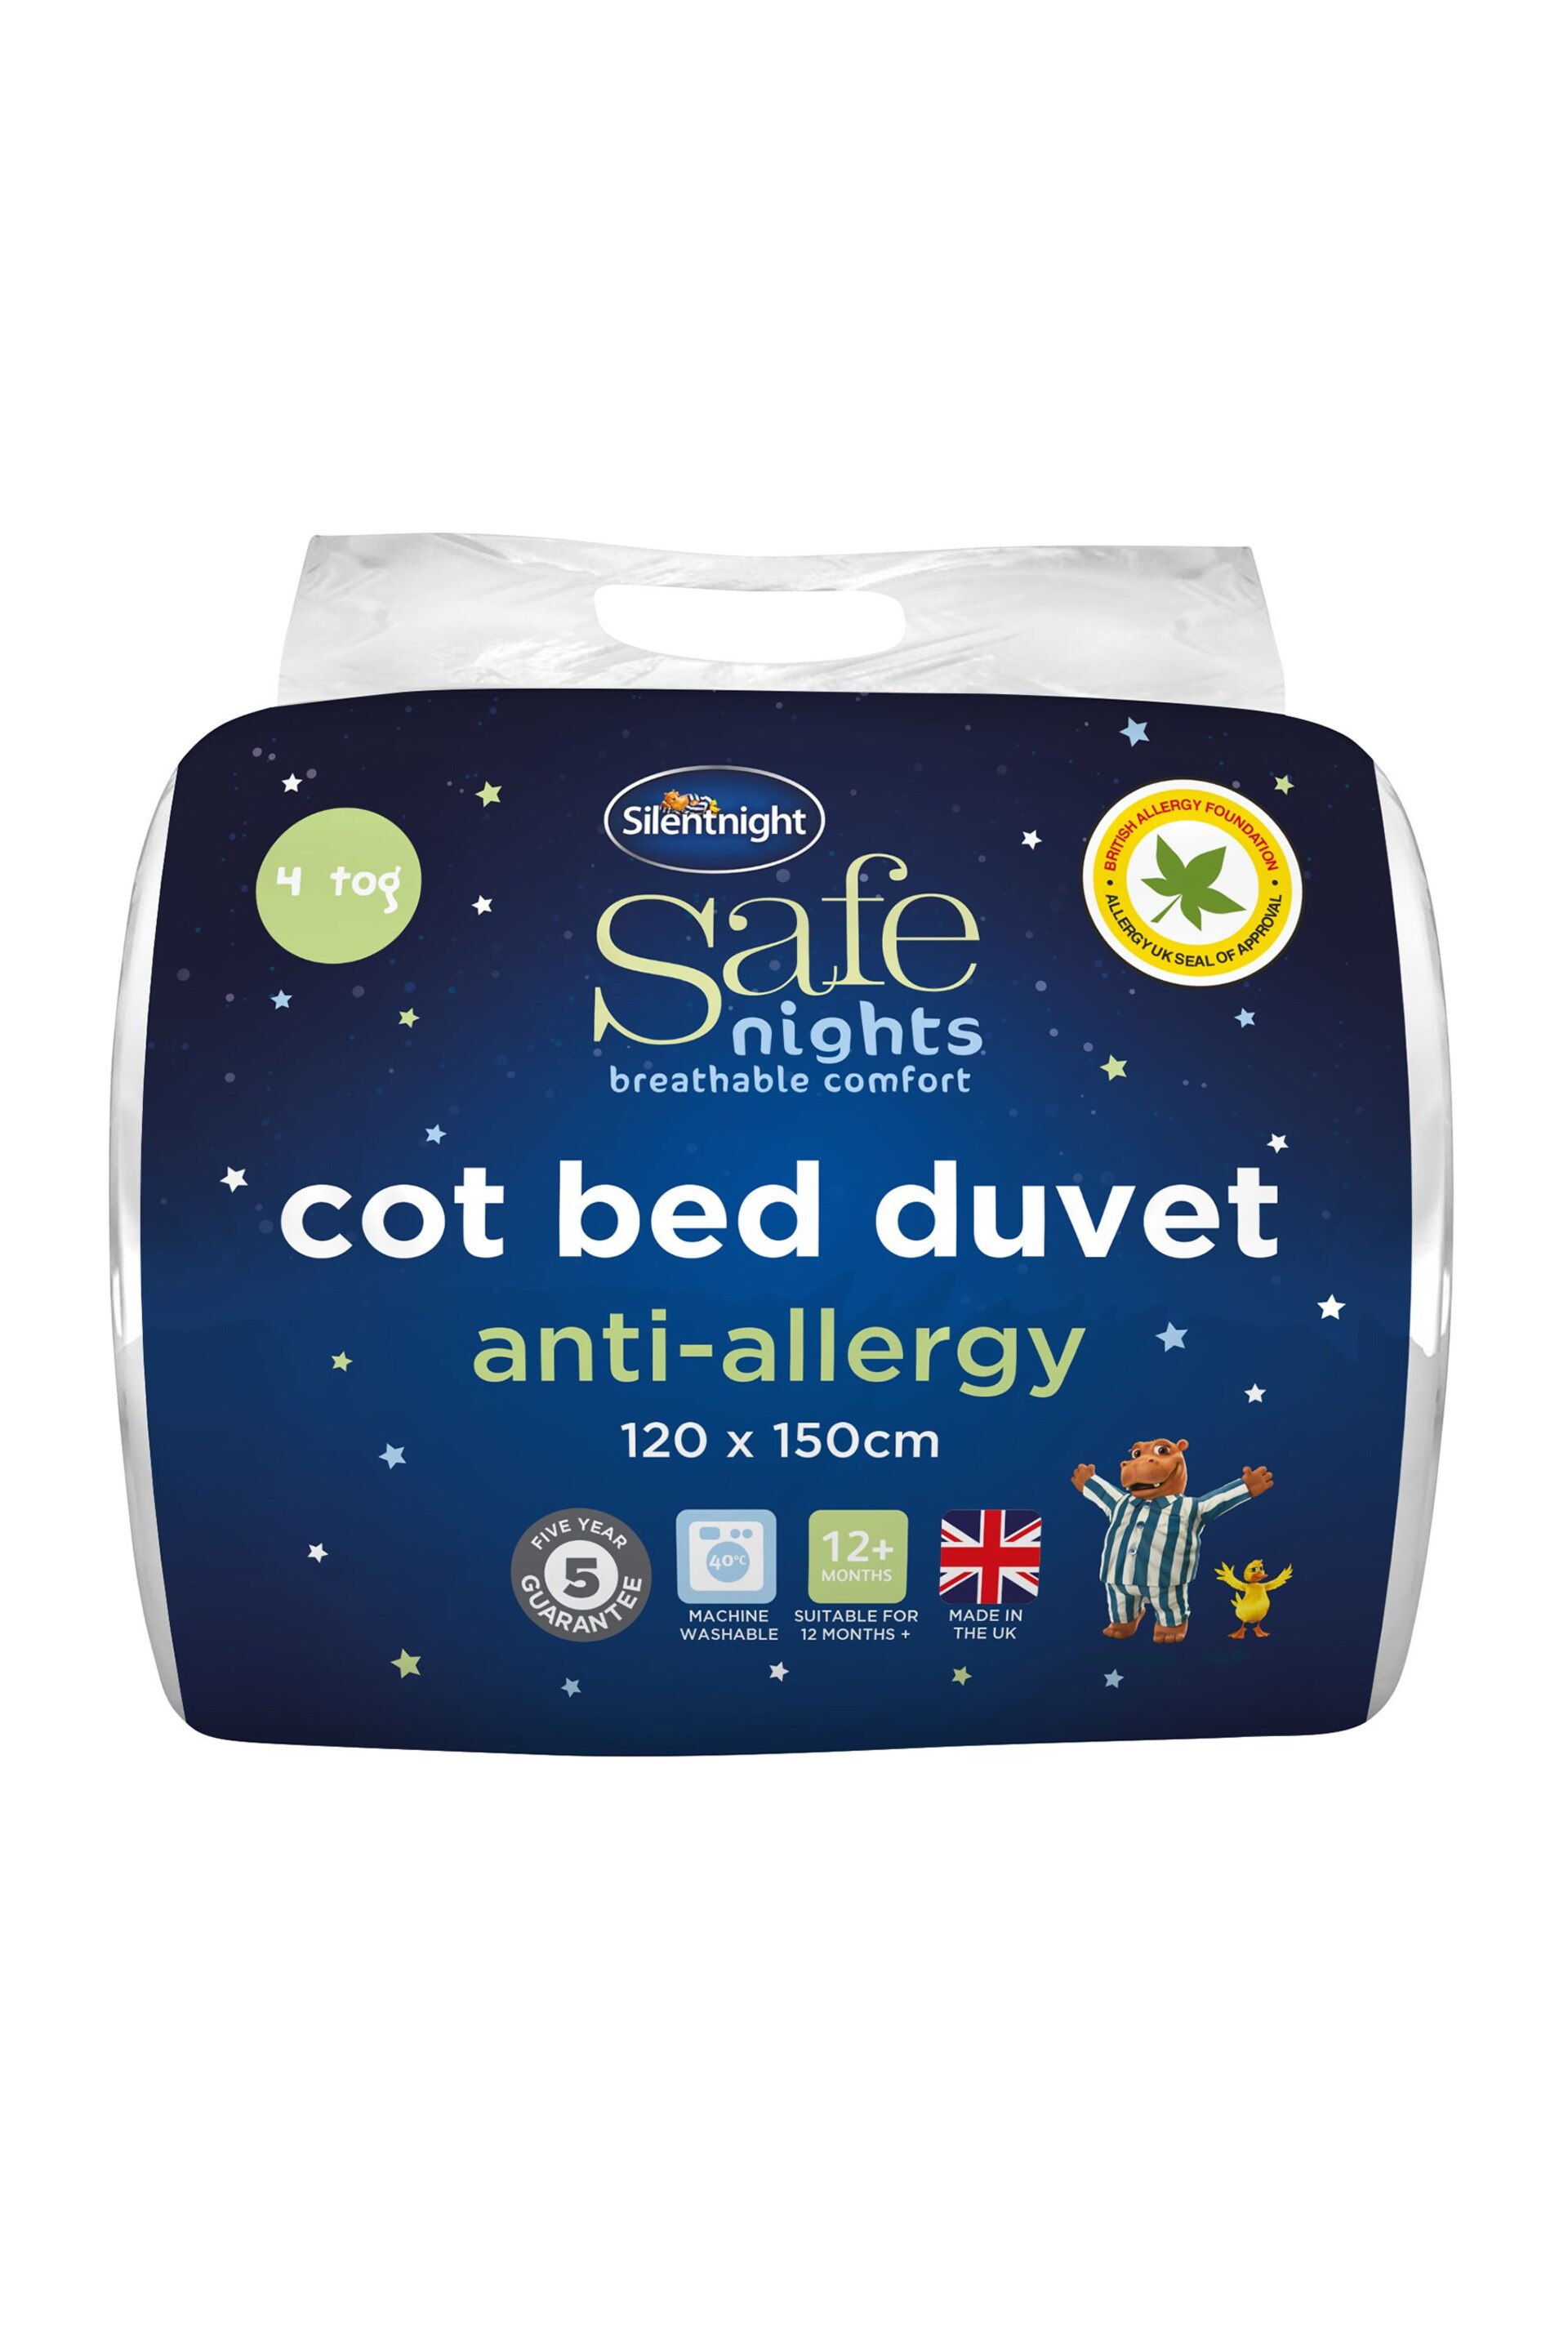 Silentnight Anti Allergy 4 Tog Toddler/Cot Bed Washable Duvet - Image 4 of 4